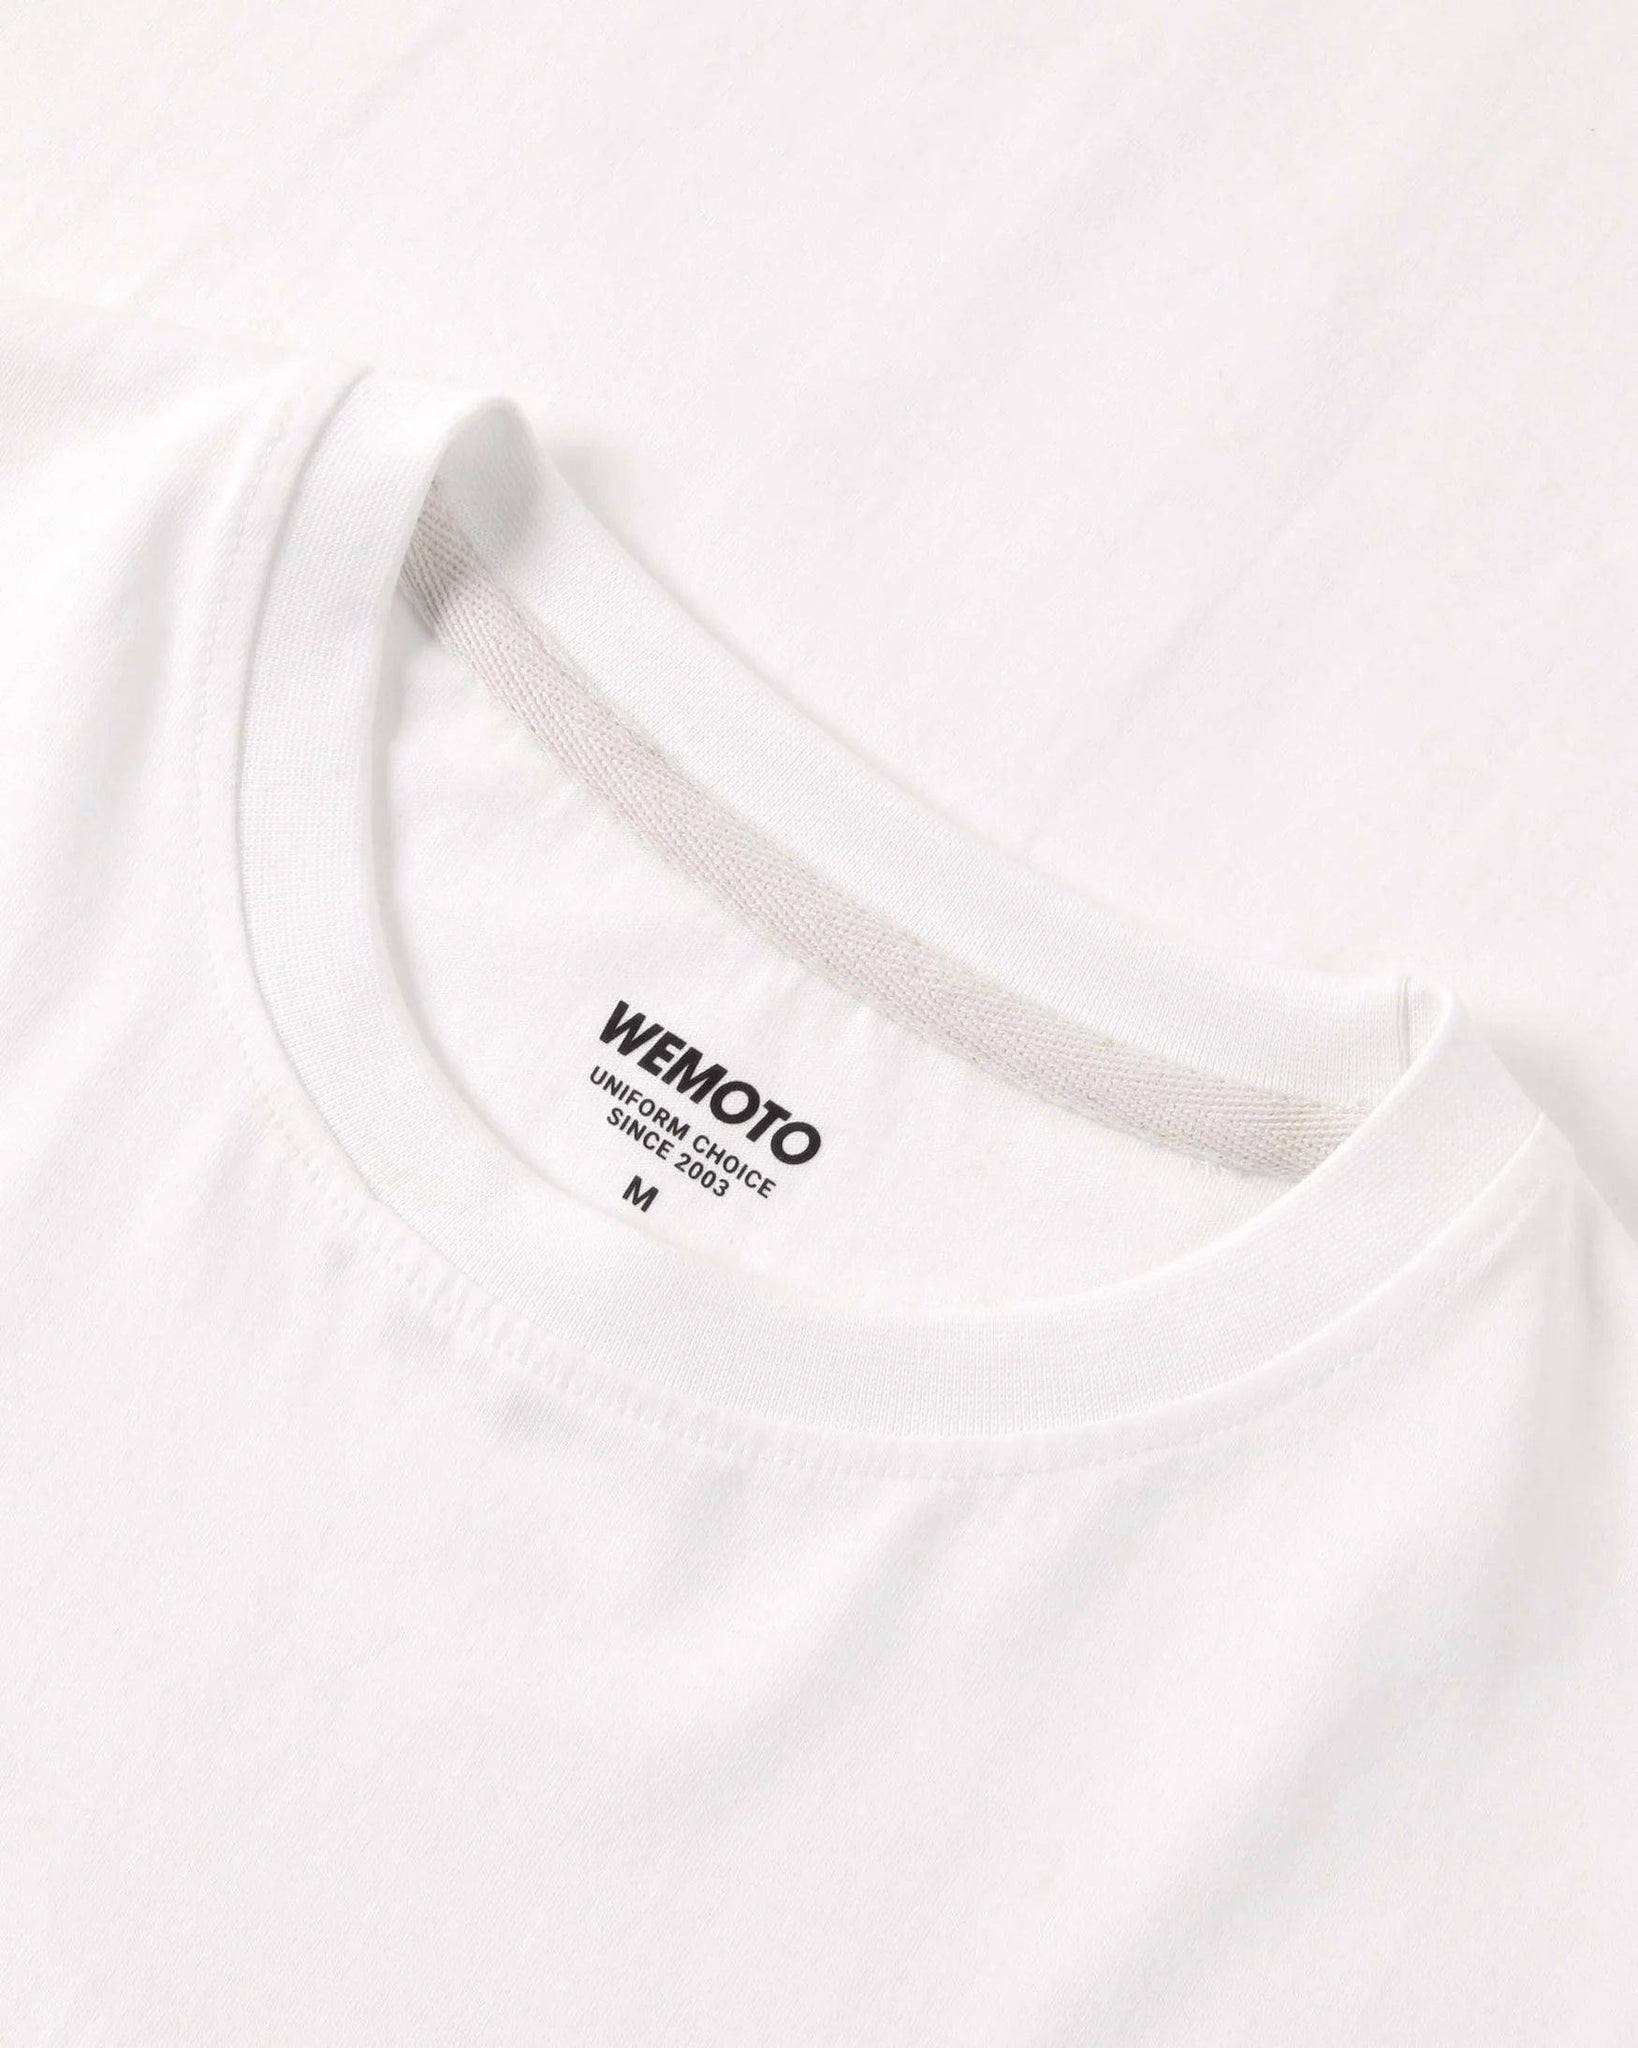 Camiseta WEMOTO Amalfi White - ECRU